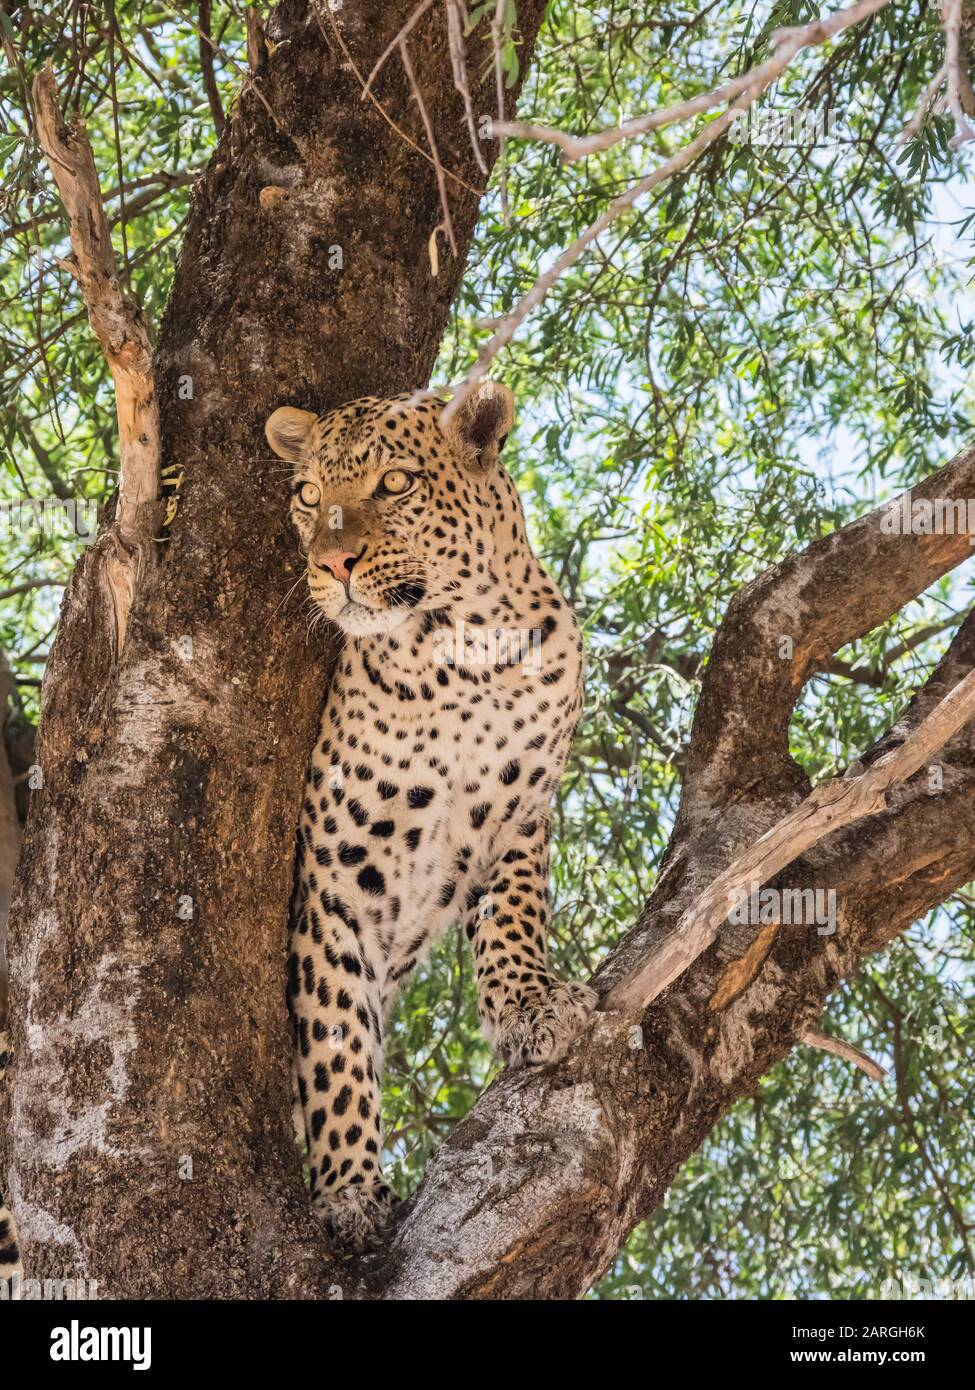 Un leopardo adulto (Panthera pardus), que se alimentaba de un barteño arrastrado en un árbol en el Parque Nacional de Chobe, Botswana, África Foto de stock